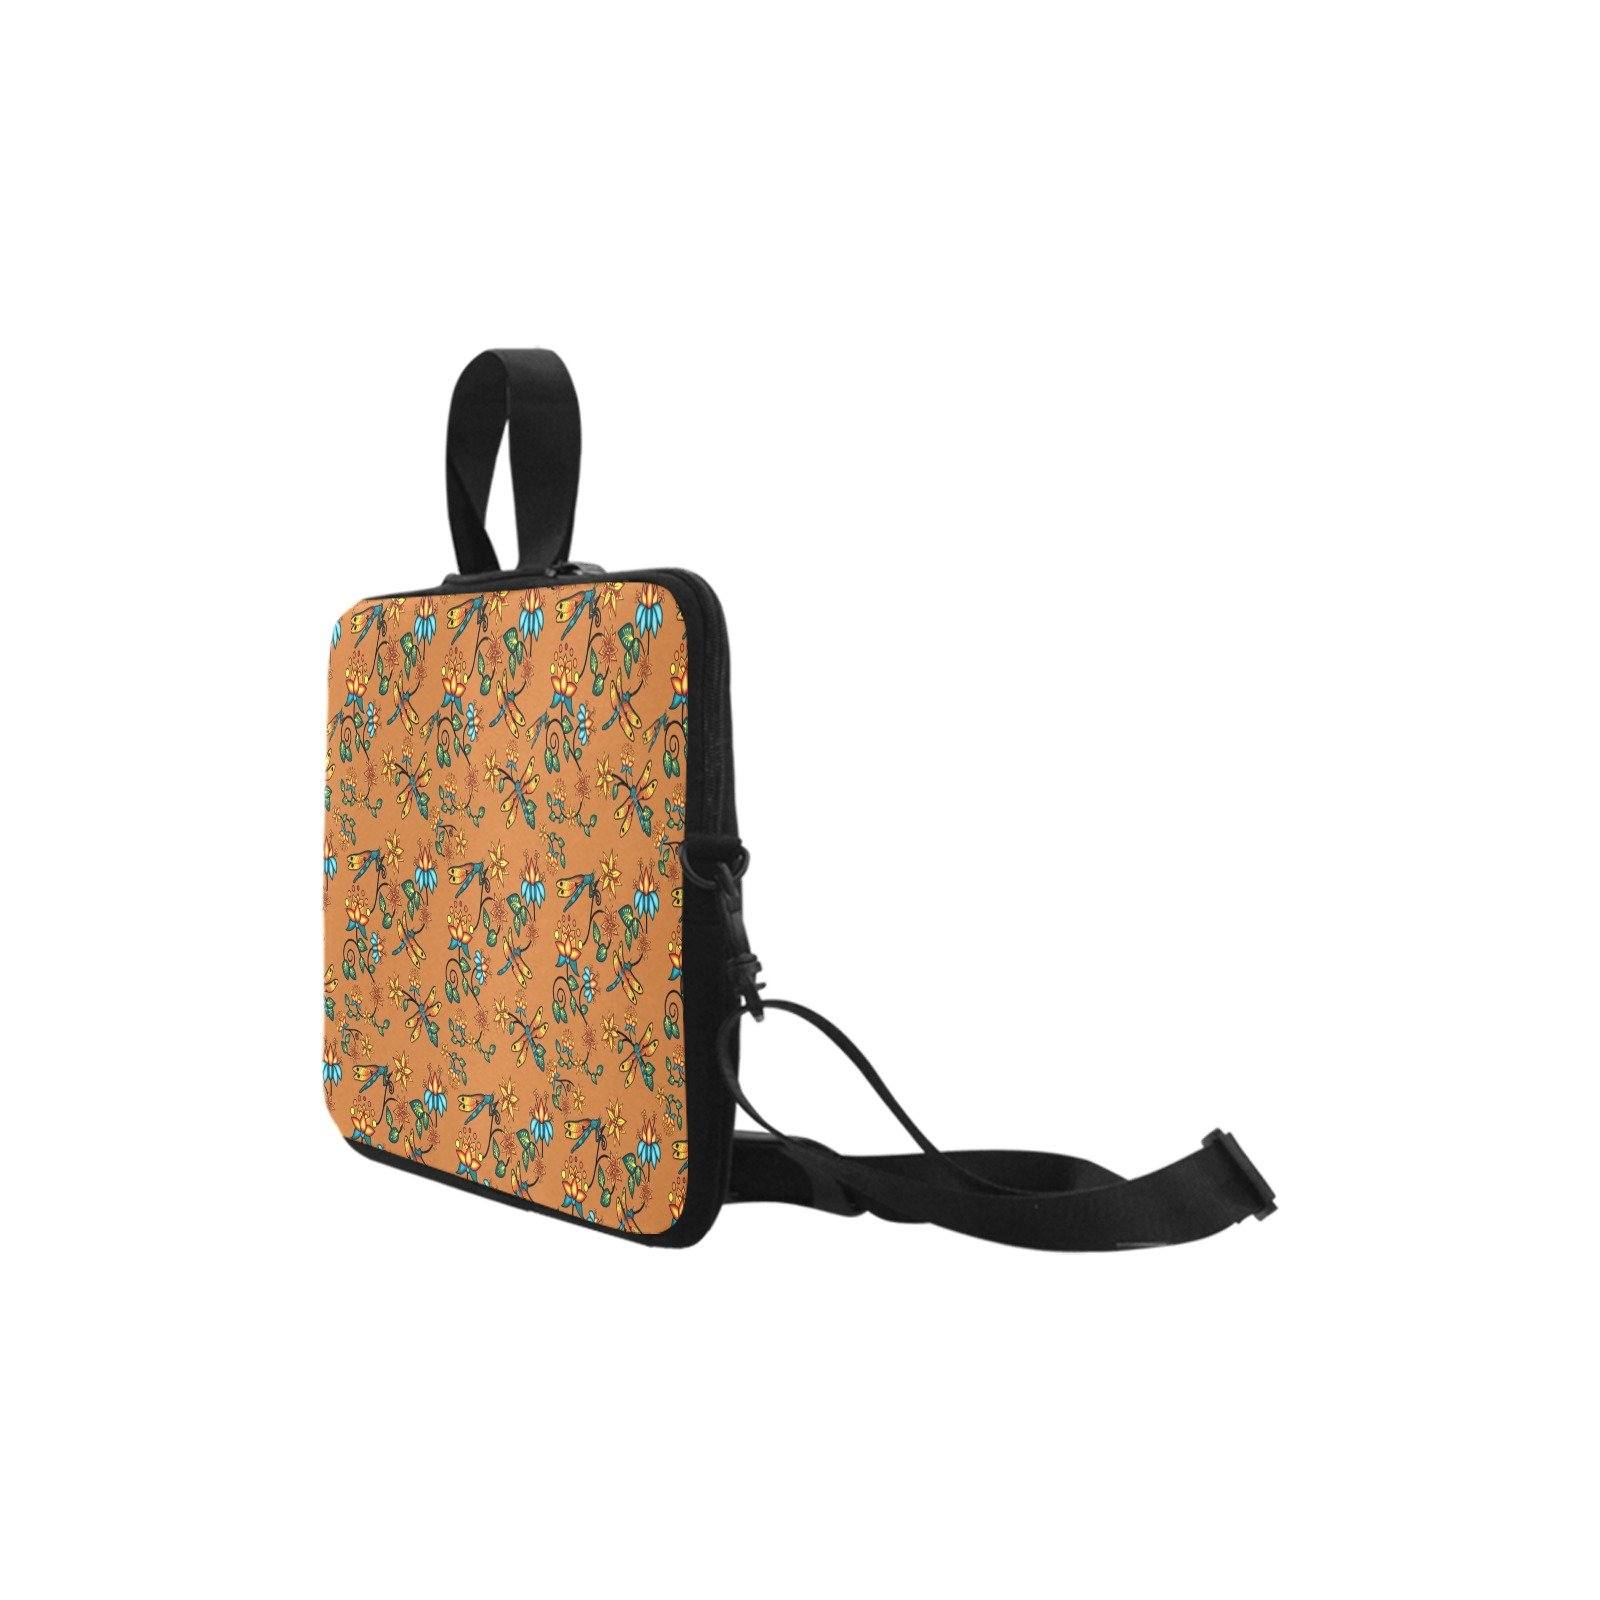 Dragon Lily Sierra Laptop Handbags 14" bag e-joyer 